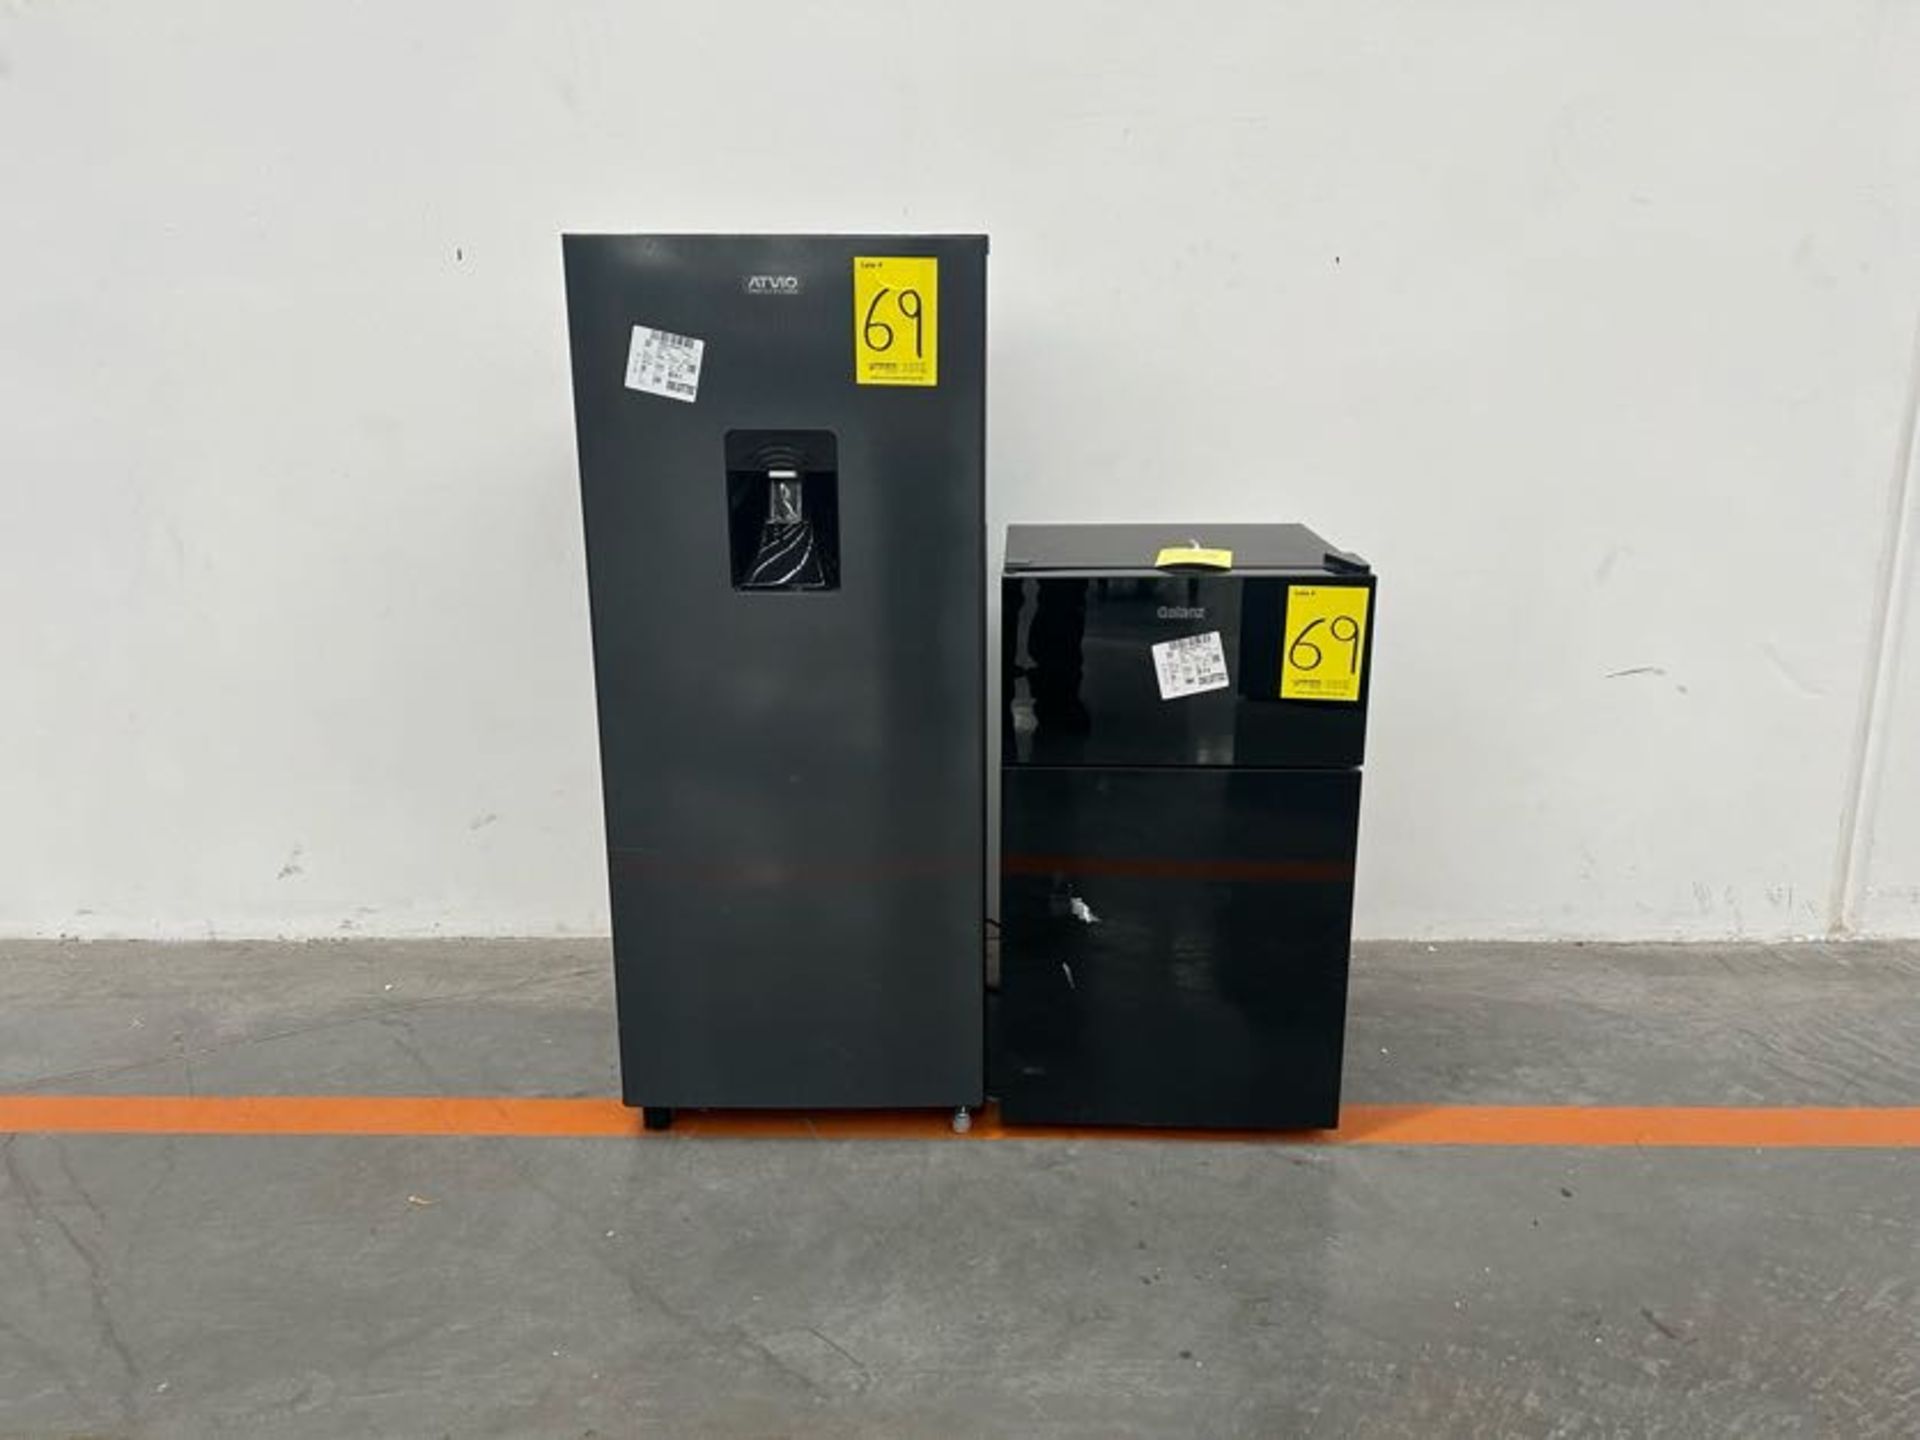 Refrigerador y 1 frigobar contiene: 1 Refrigerador Marca ATVIO, Modelo AT66URS, Serie 10566, Color